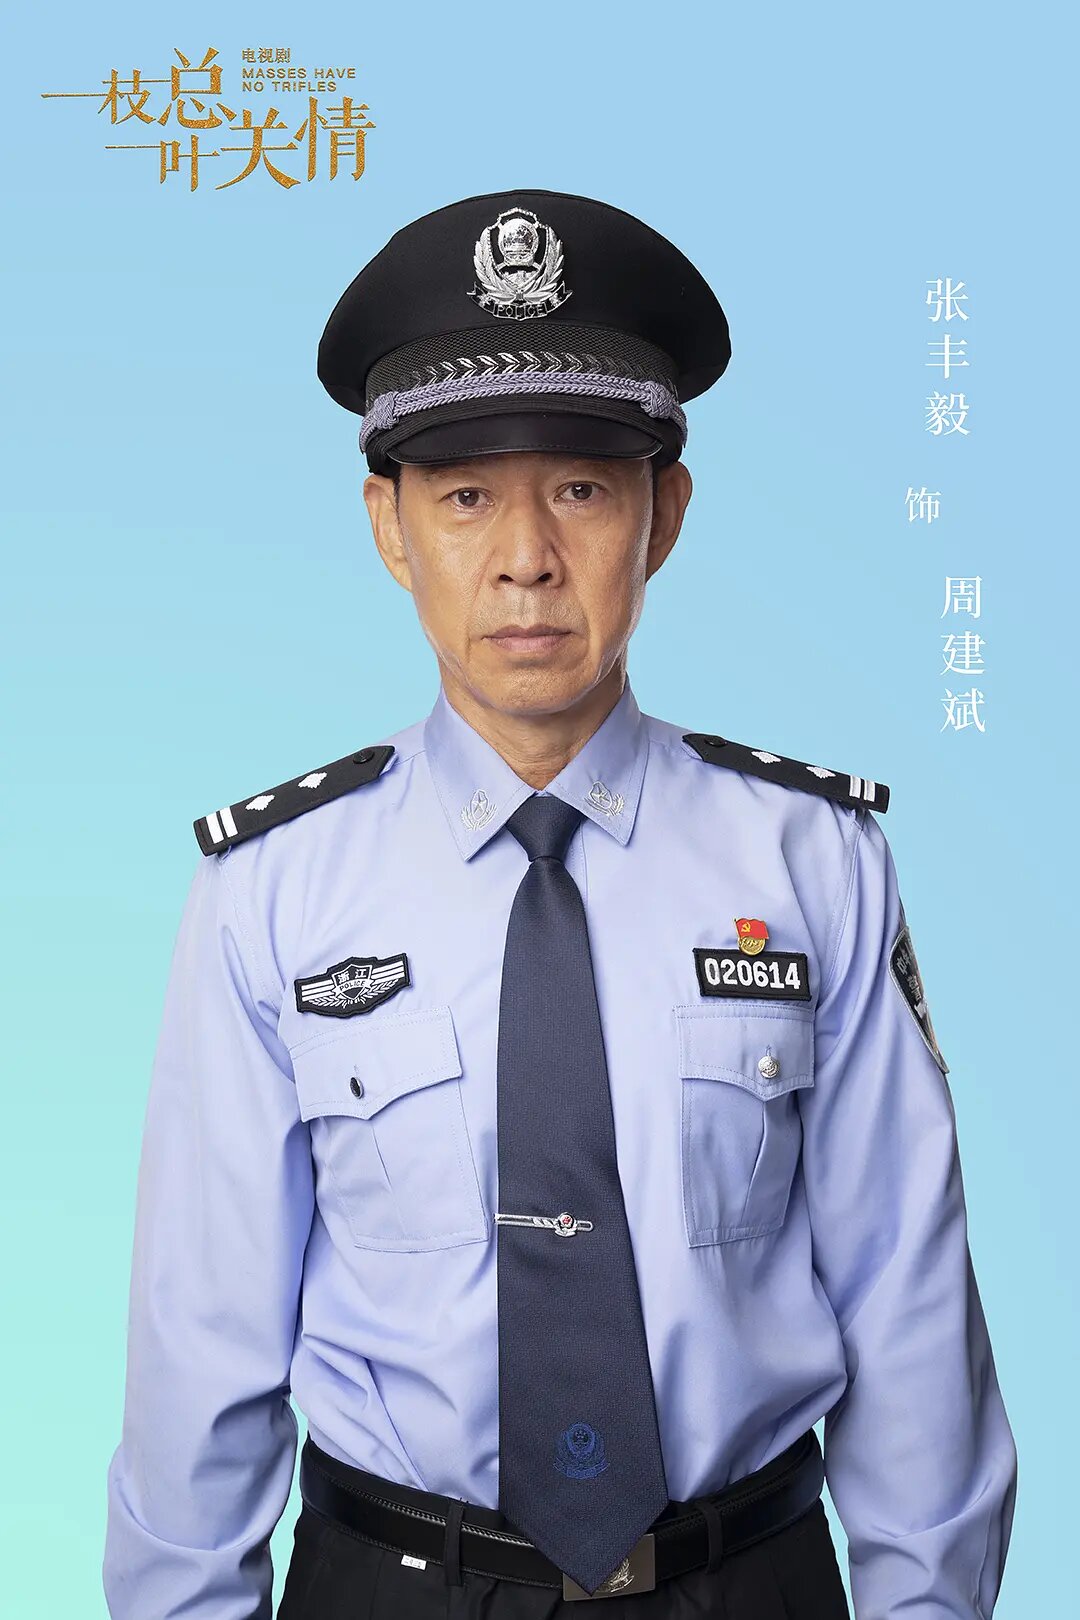 Zhou Jian Bin